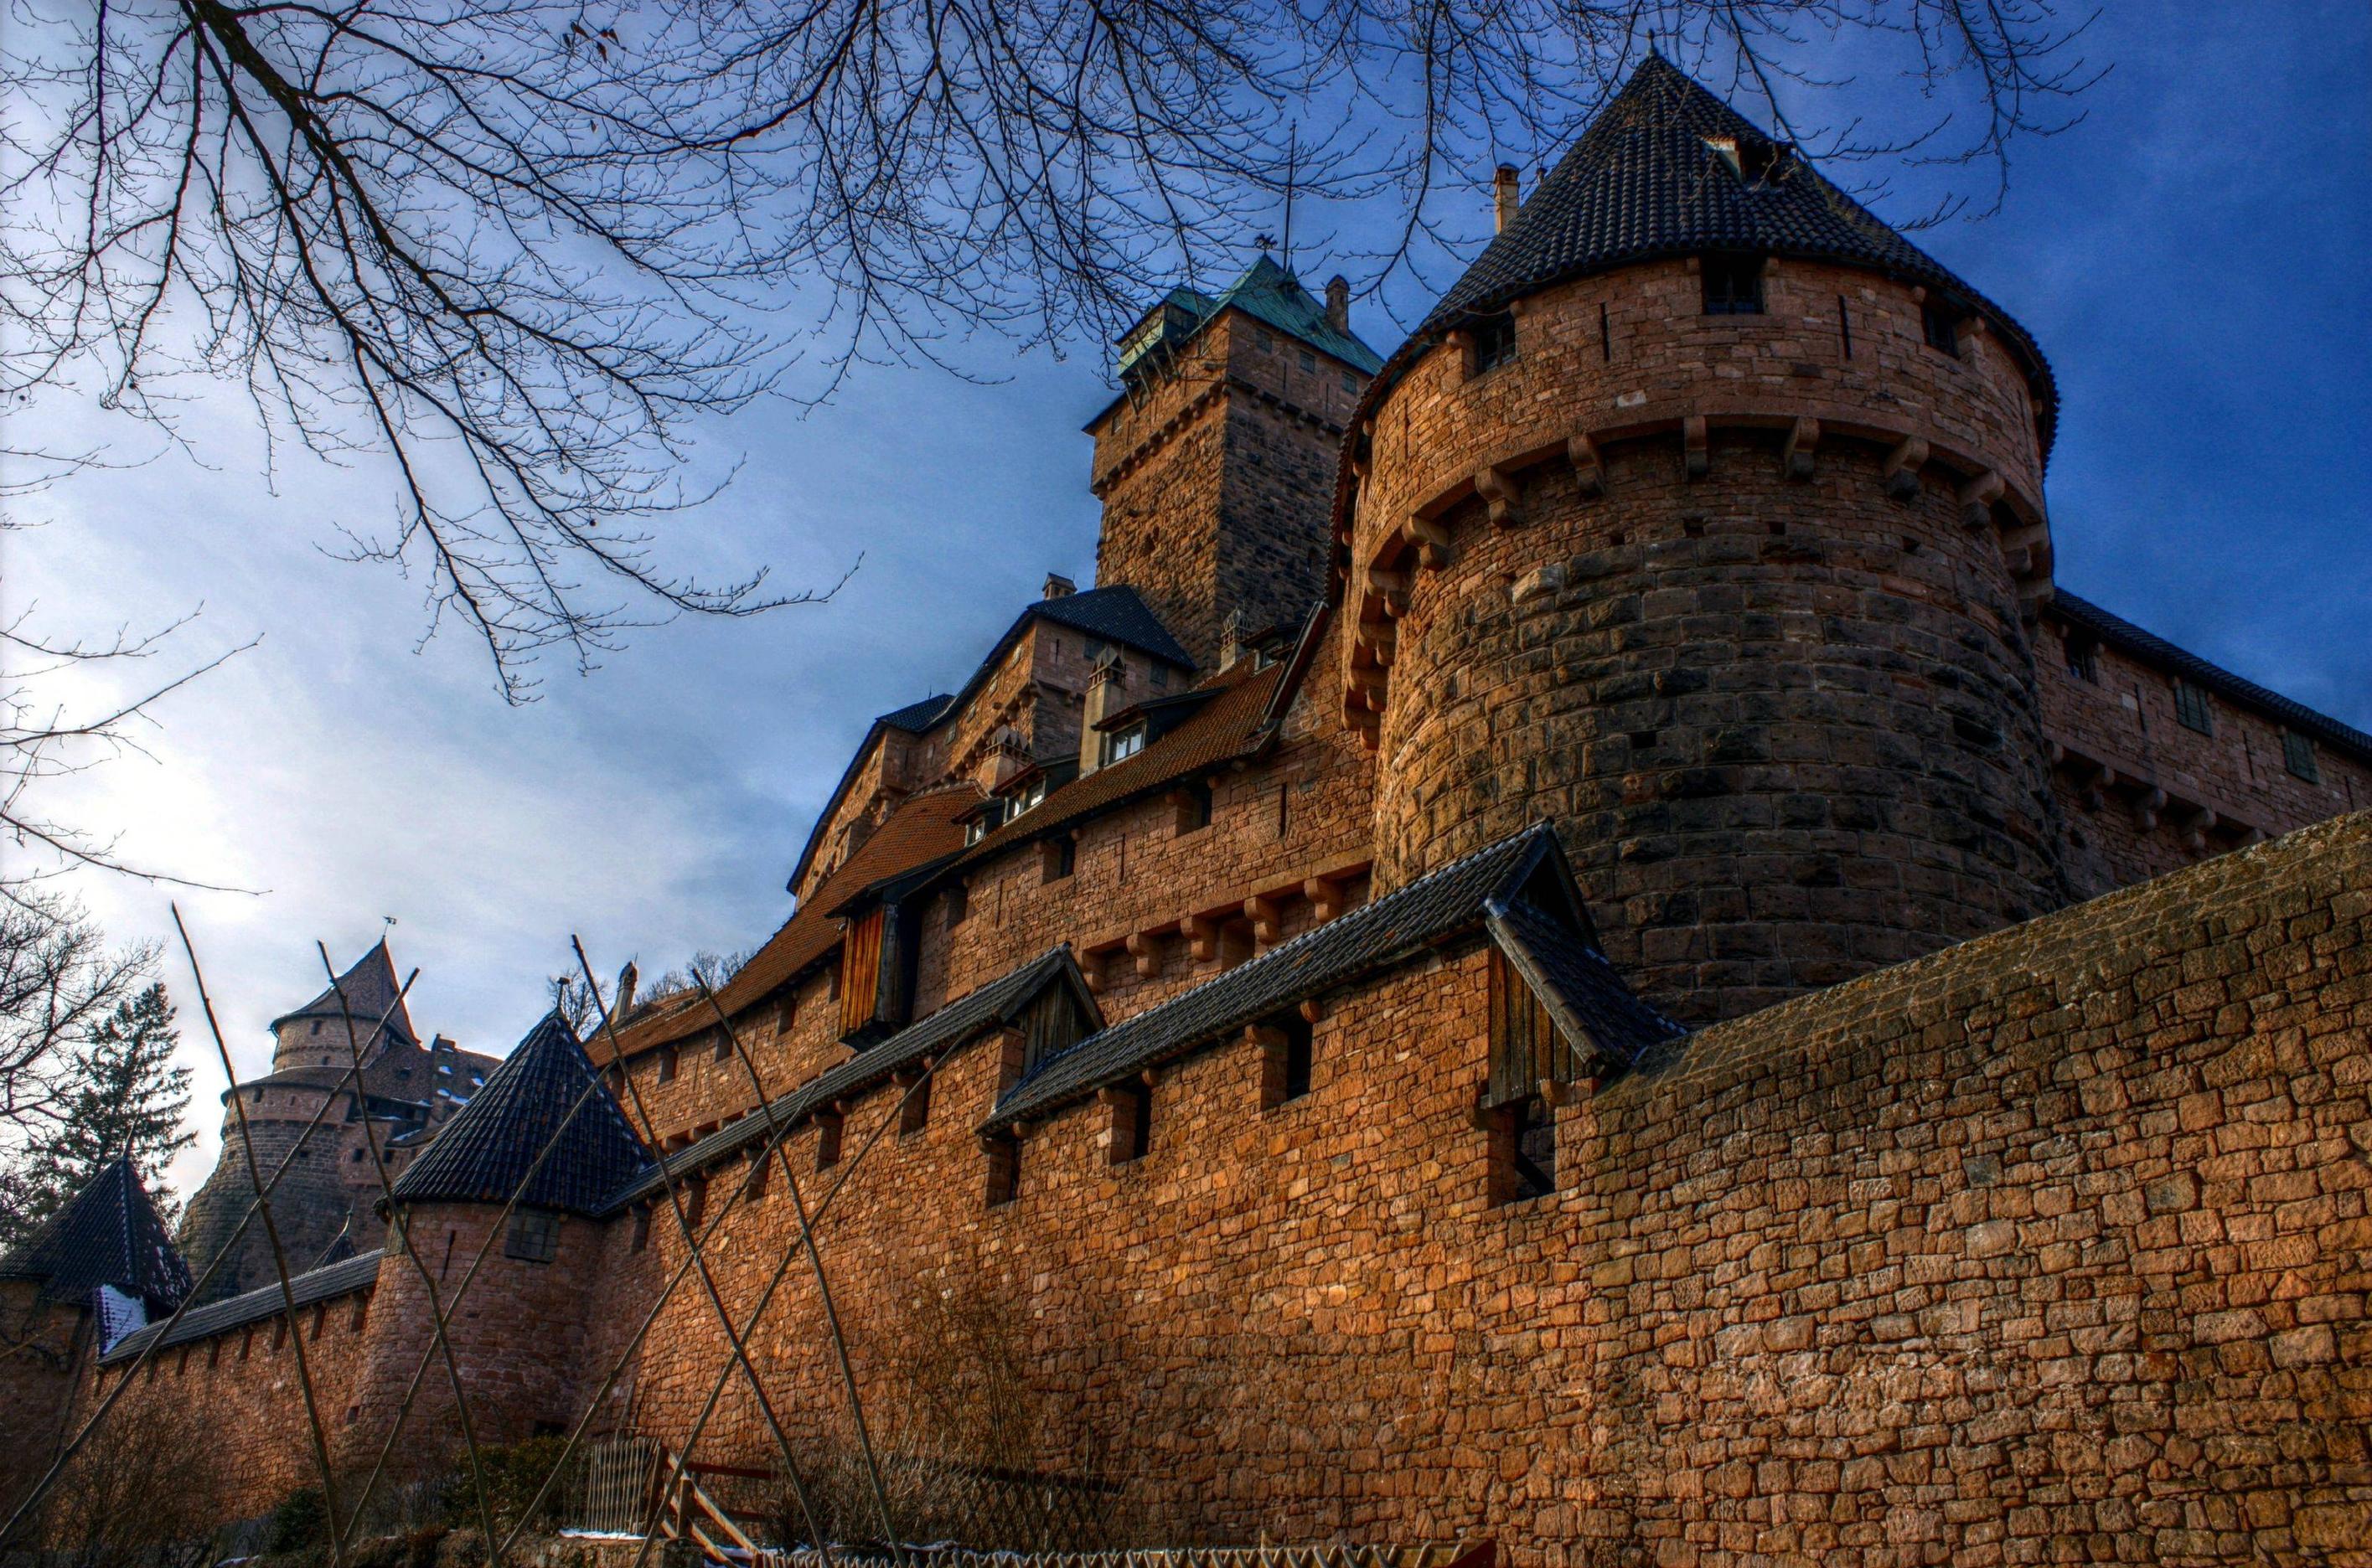 Популярные заставки и фоны Замок Верхний Кенигсбург на компьютер